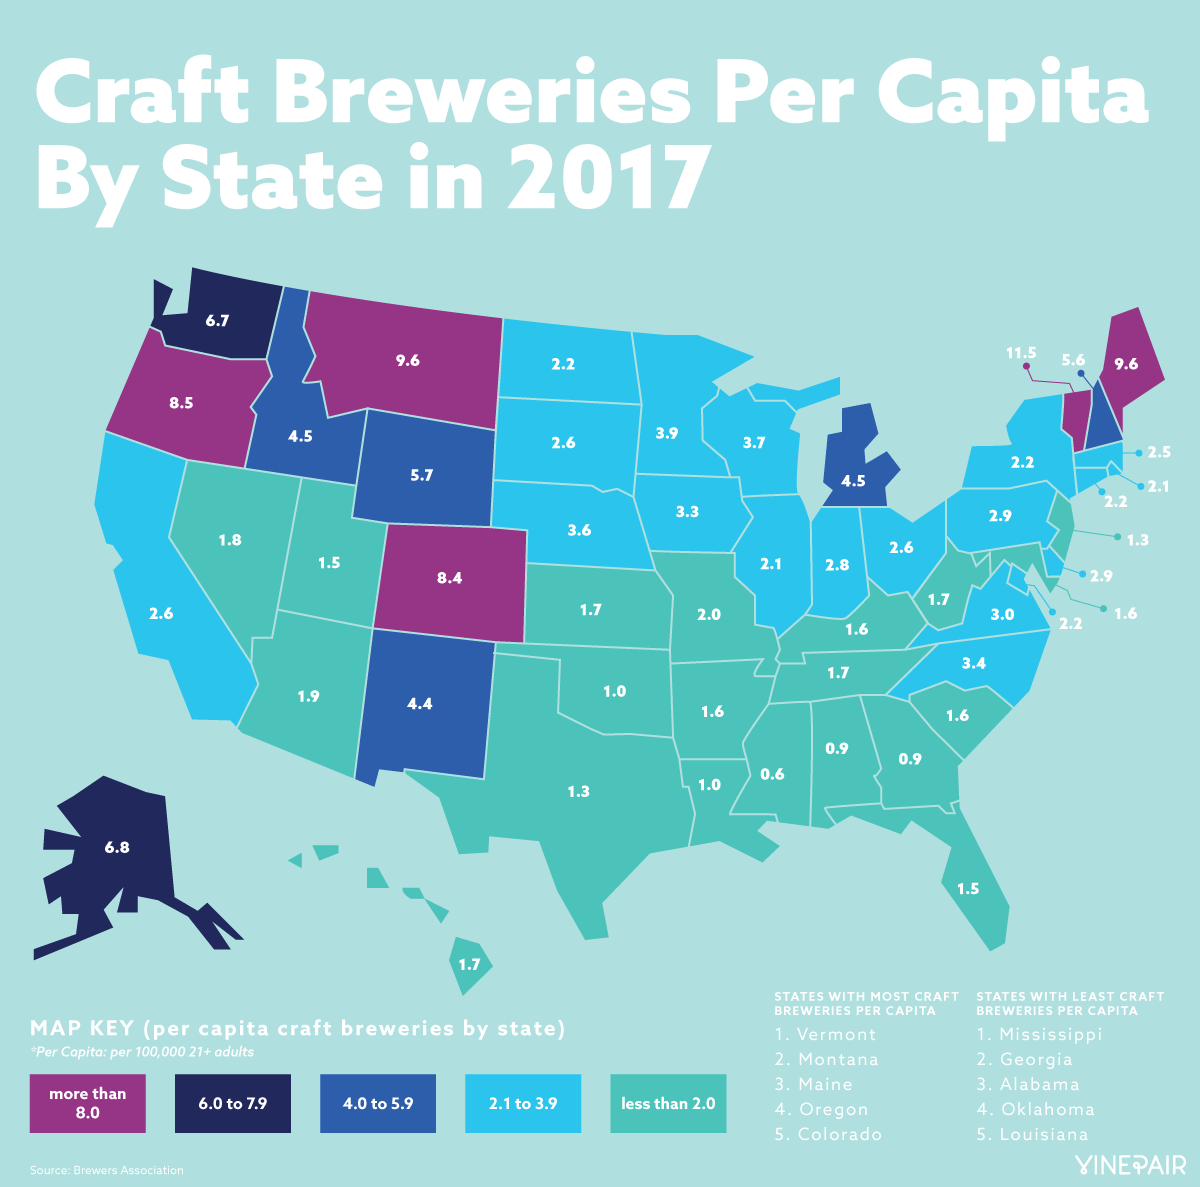 Craft Breweries Per Capita By State in 2017